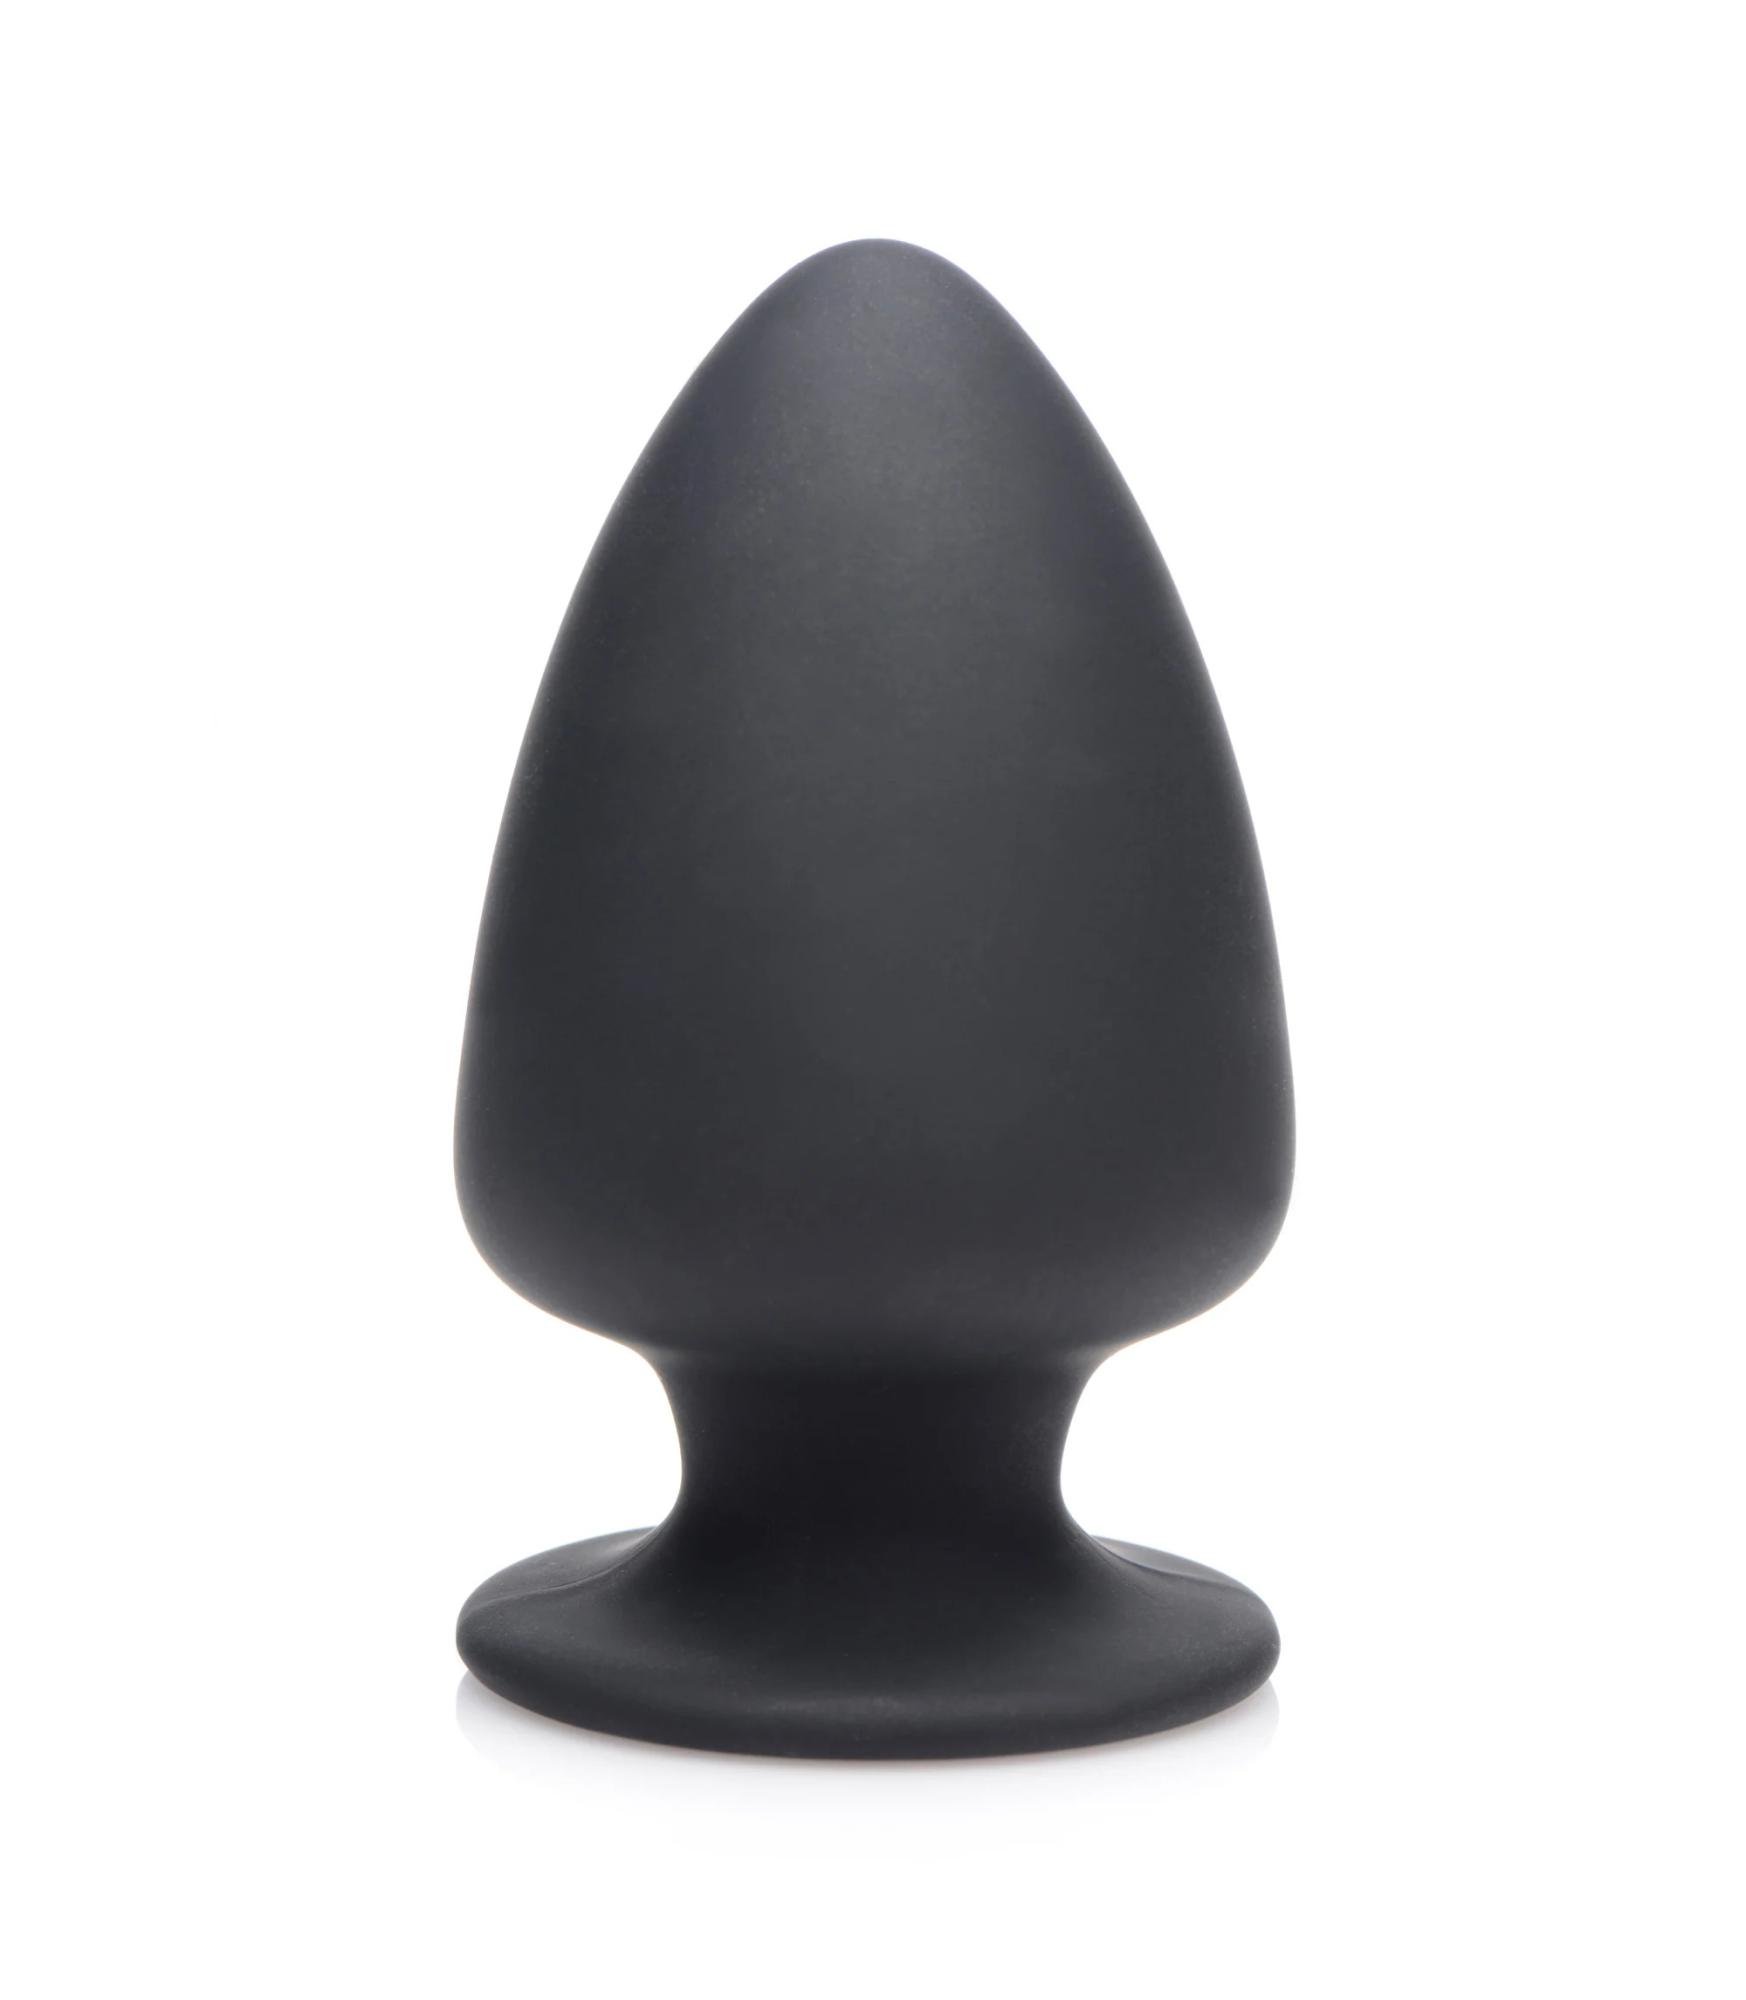 Squeeze-It Silicone Anal Plug Small - мягкая гибкая анальная пробка, S 9х5.1 см (чёрный)